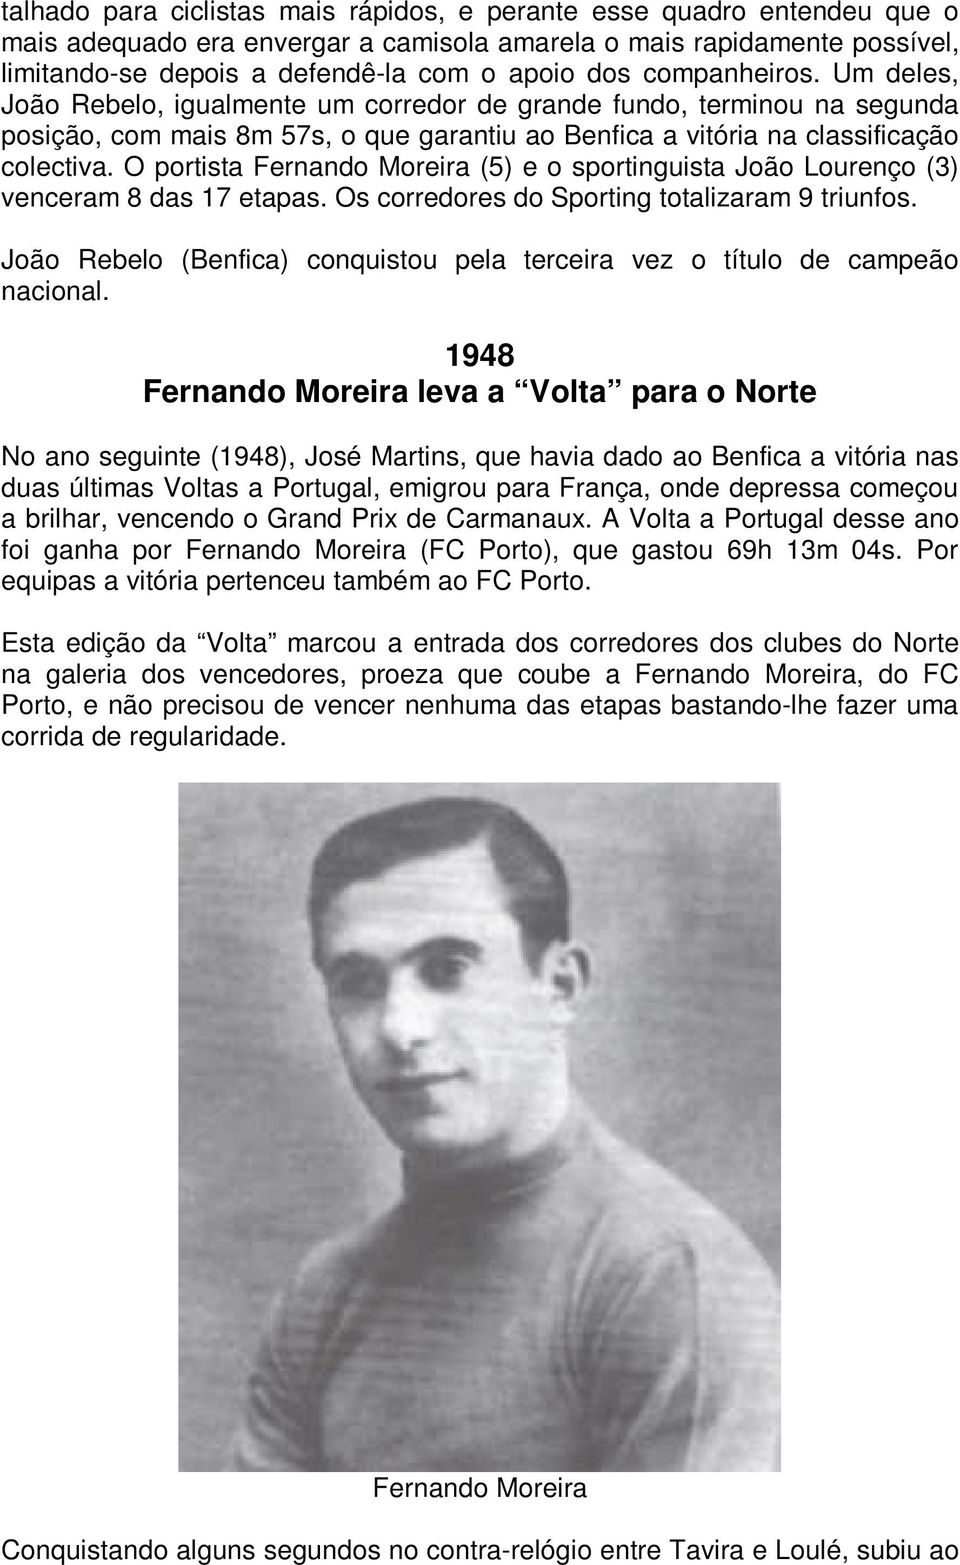 O portista Fernando Moreira (5) e o sportinguista João Lourenço (3) venceram 8 das 17 etapas. Os corredores do Sporting totalizaram 9 triunfos.